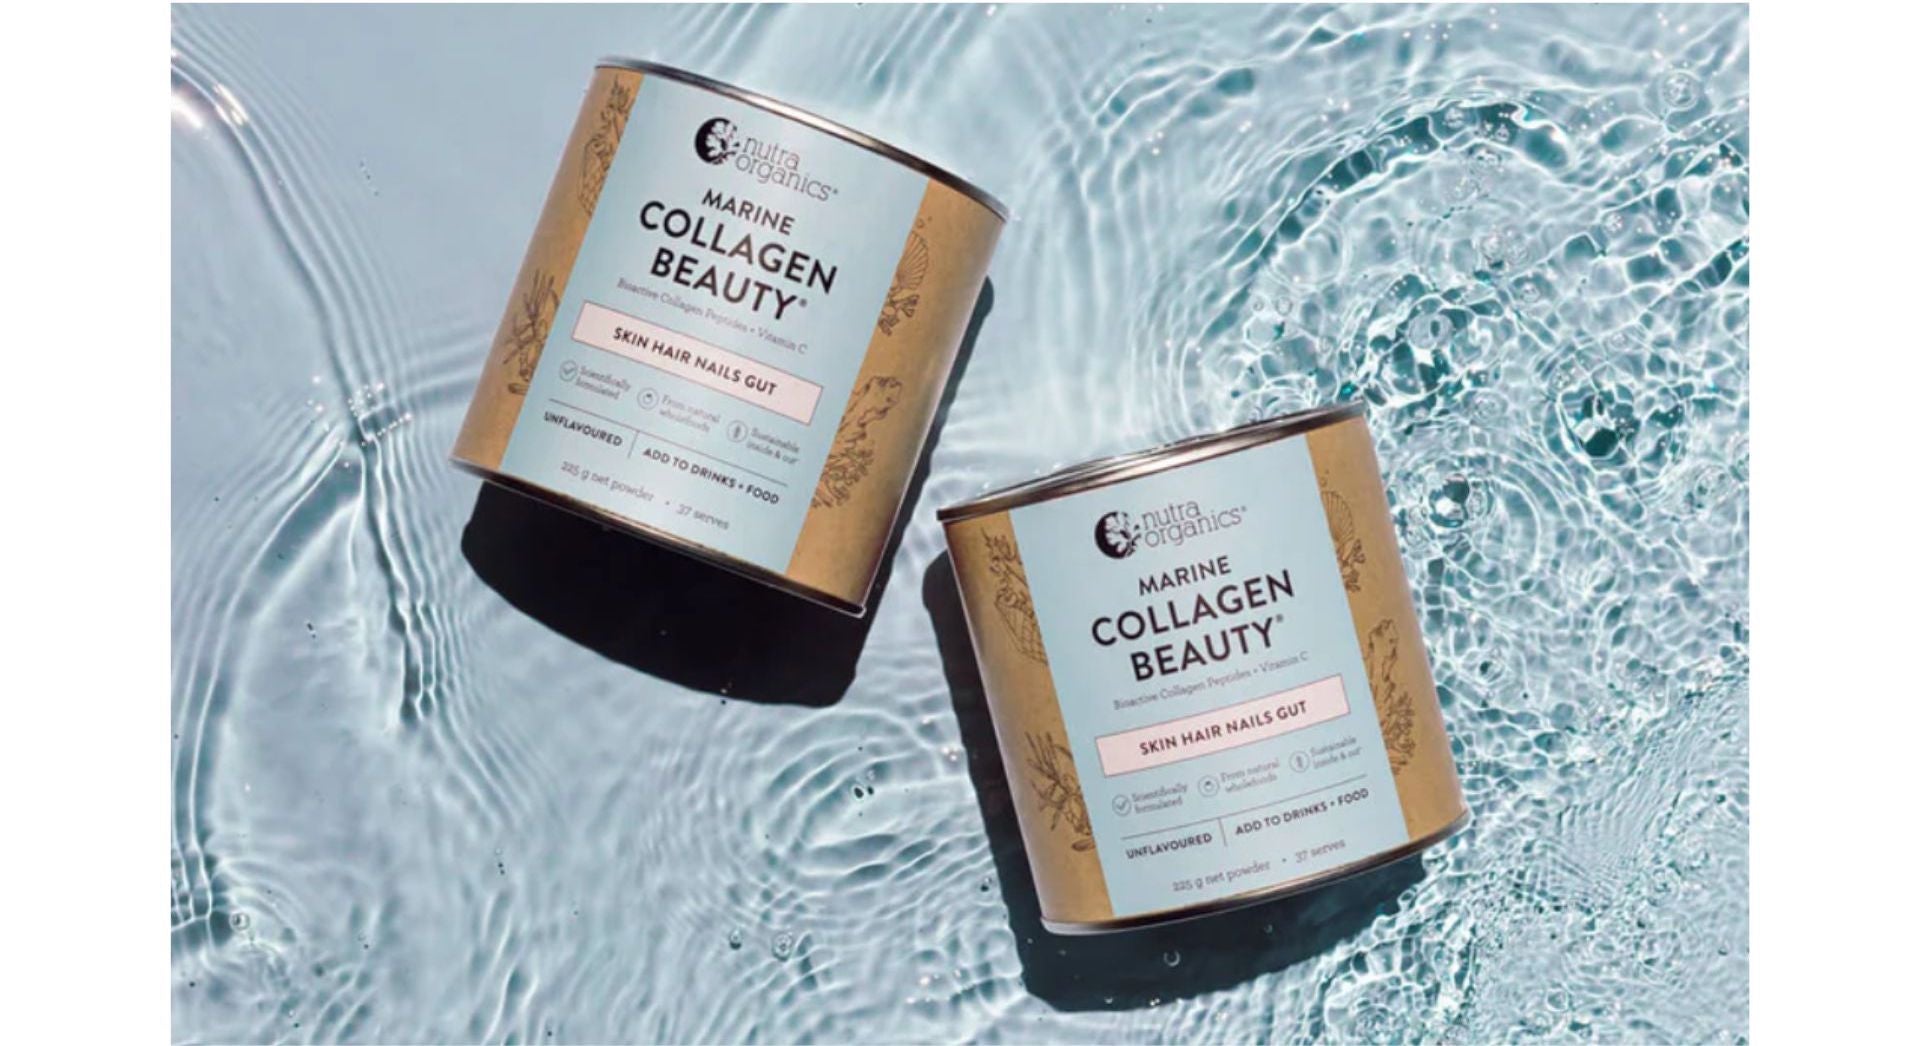 Marine collagen beauty powder